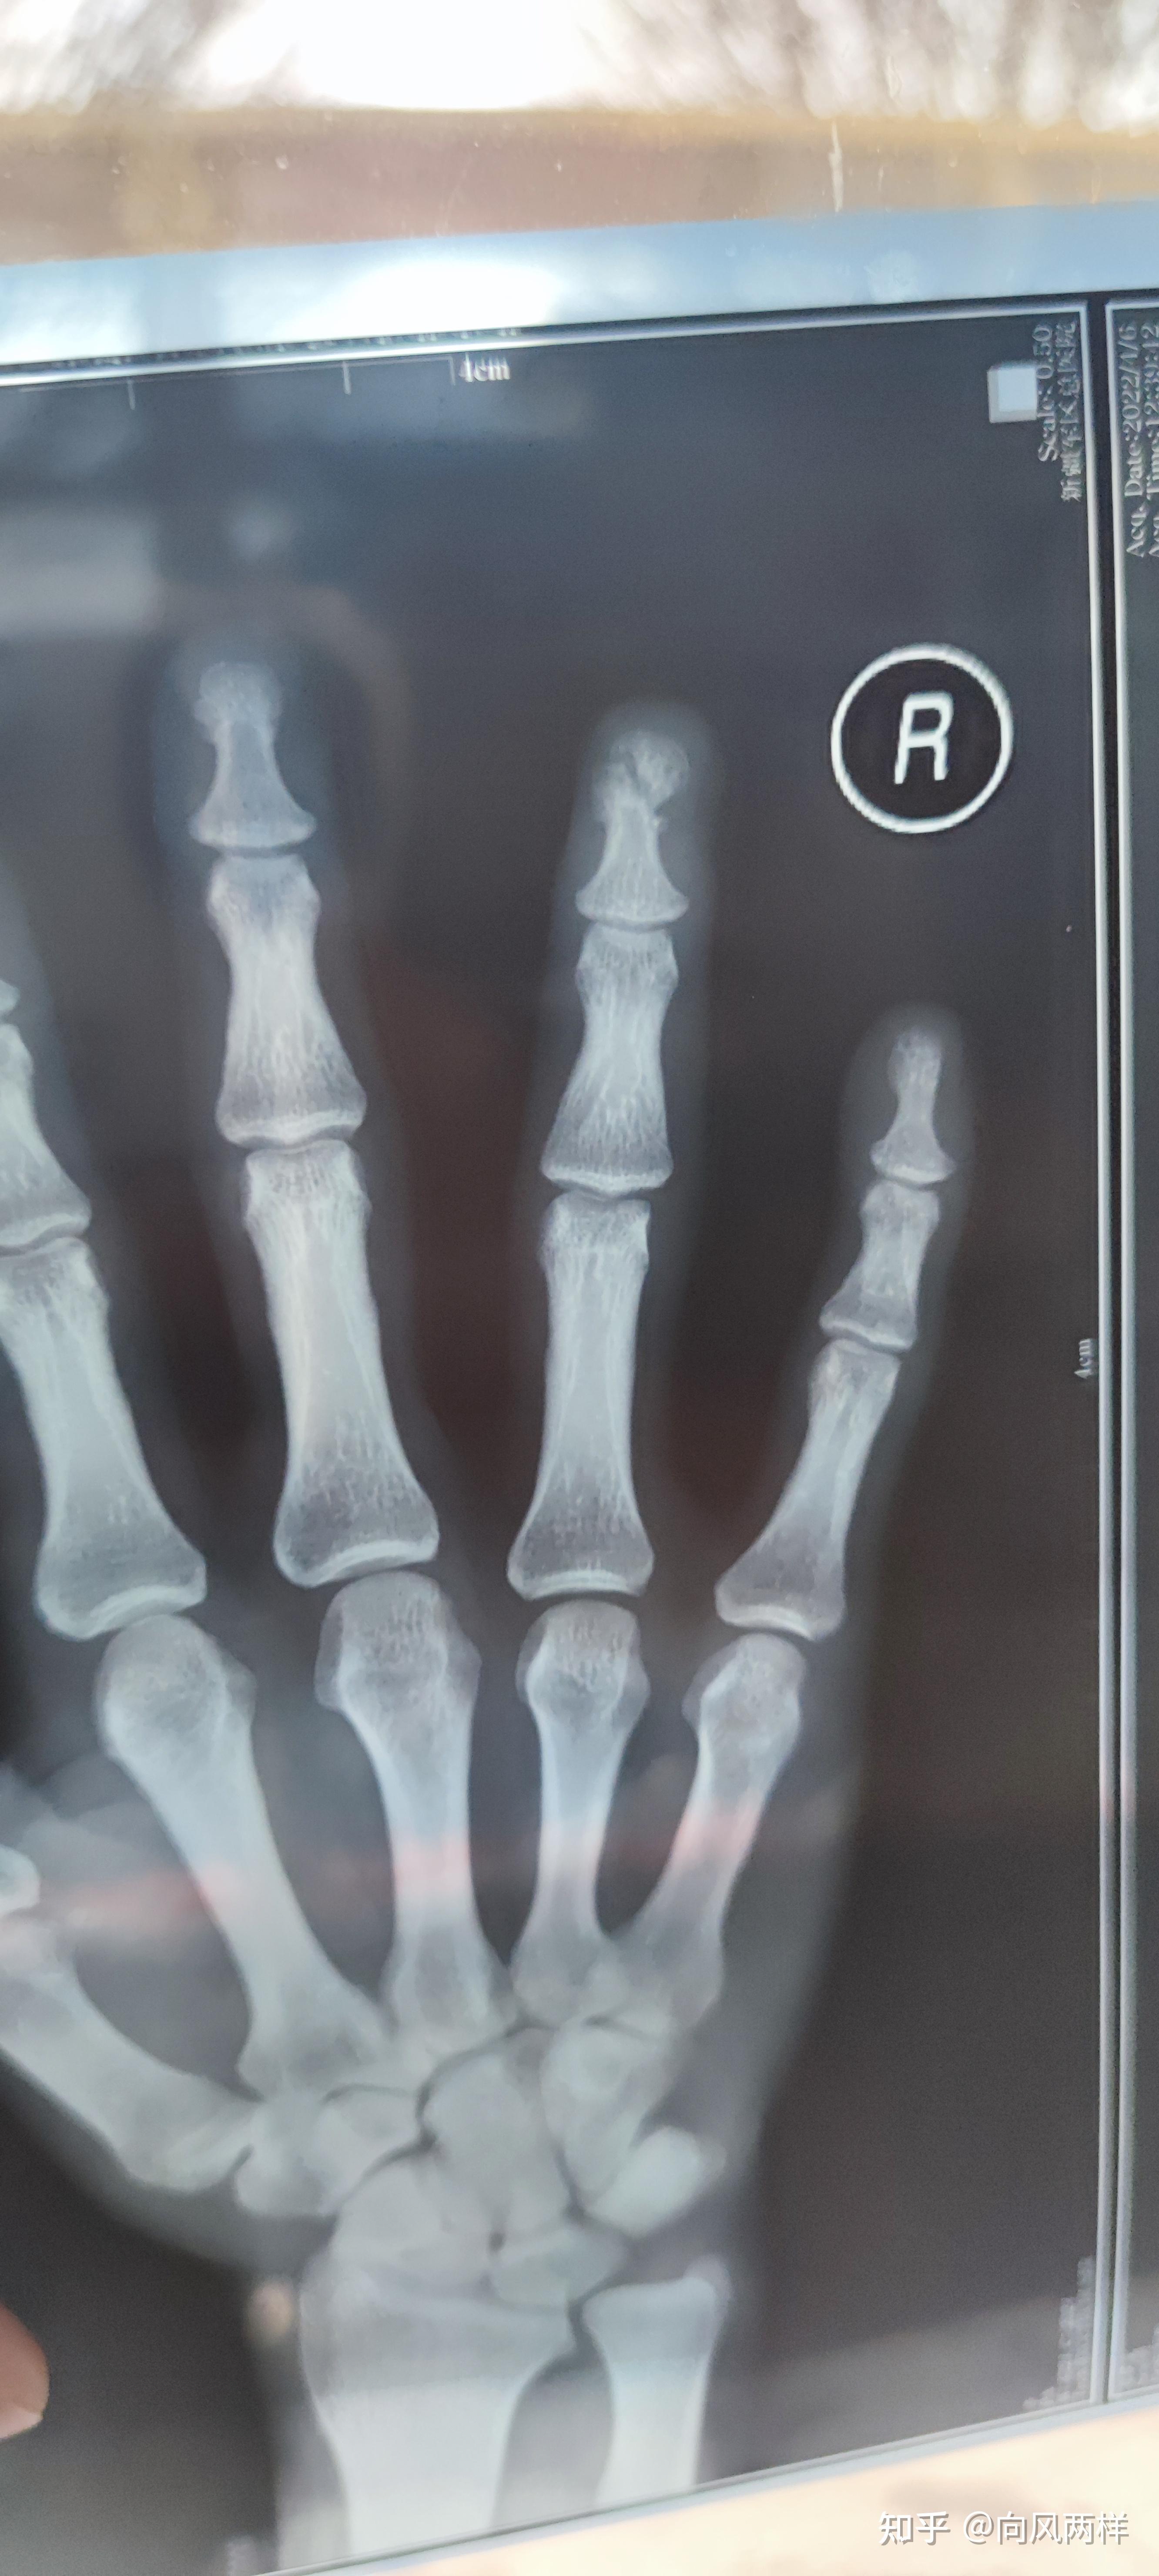 4指被切断 医生用0.1毫米线缝合血管 历时10小时完成断指再植_手指